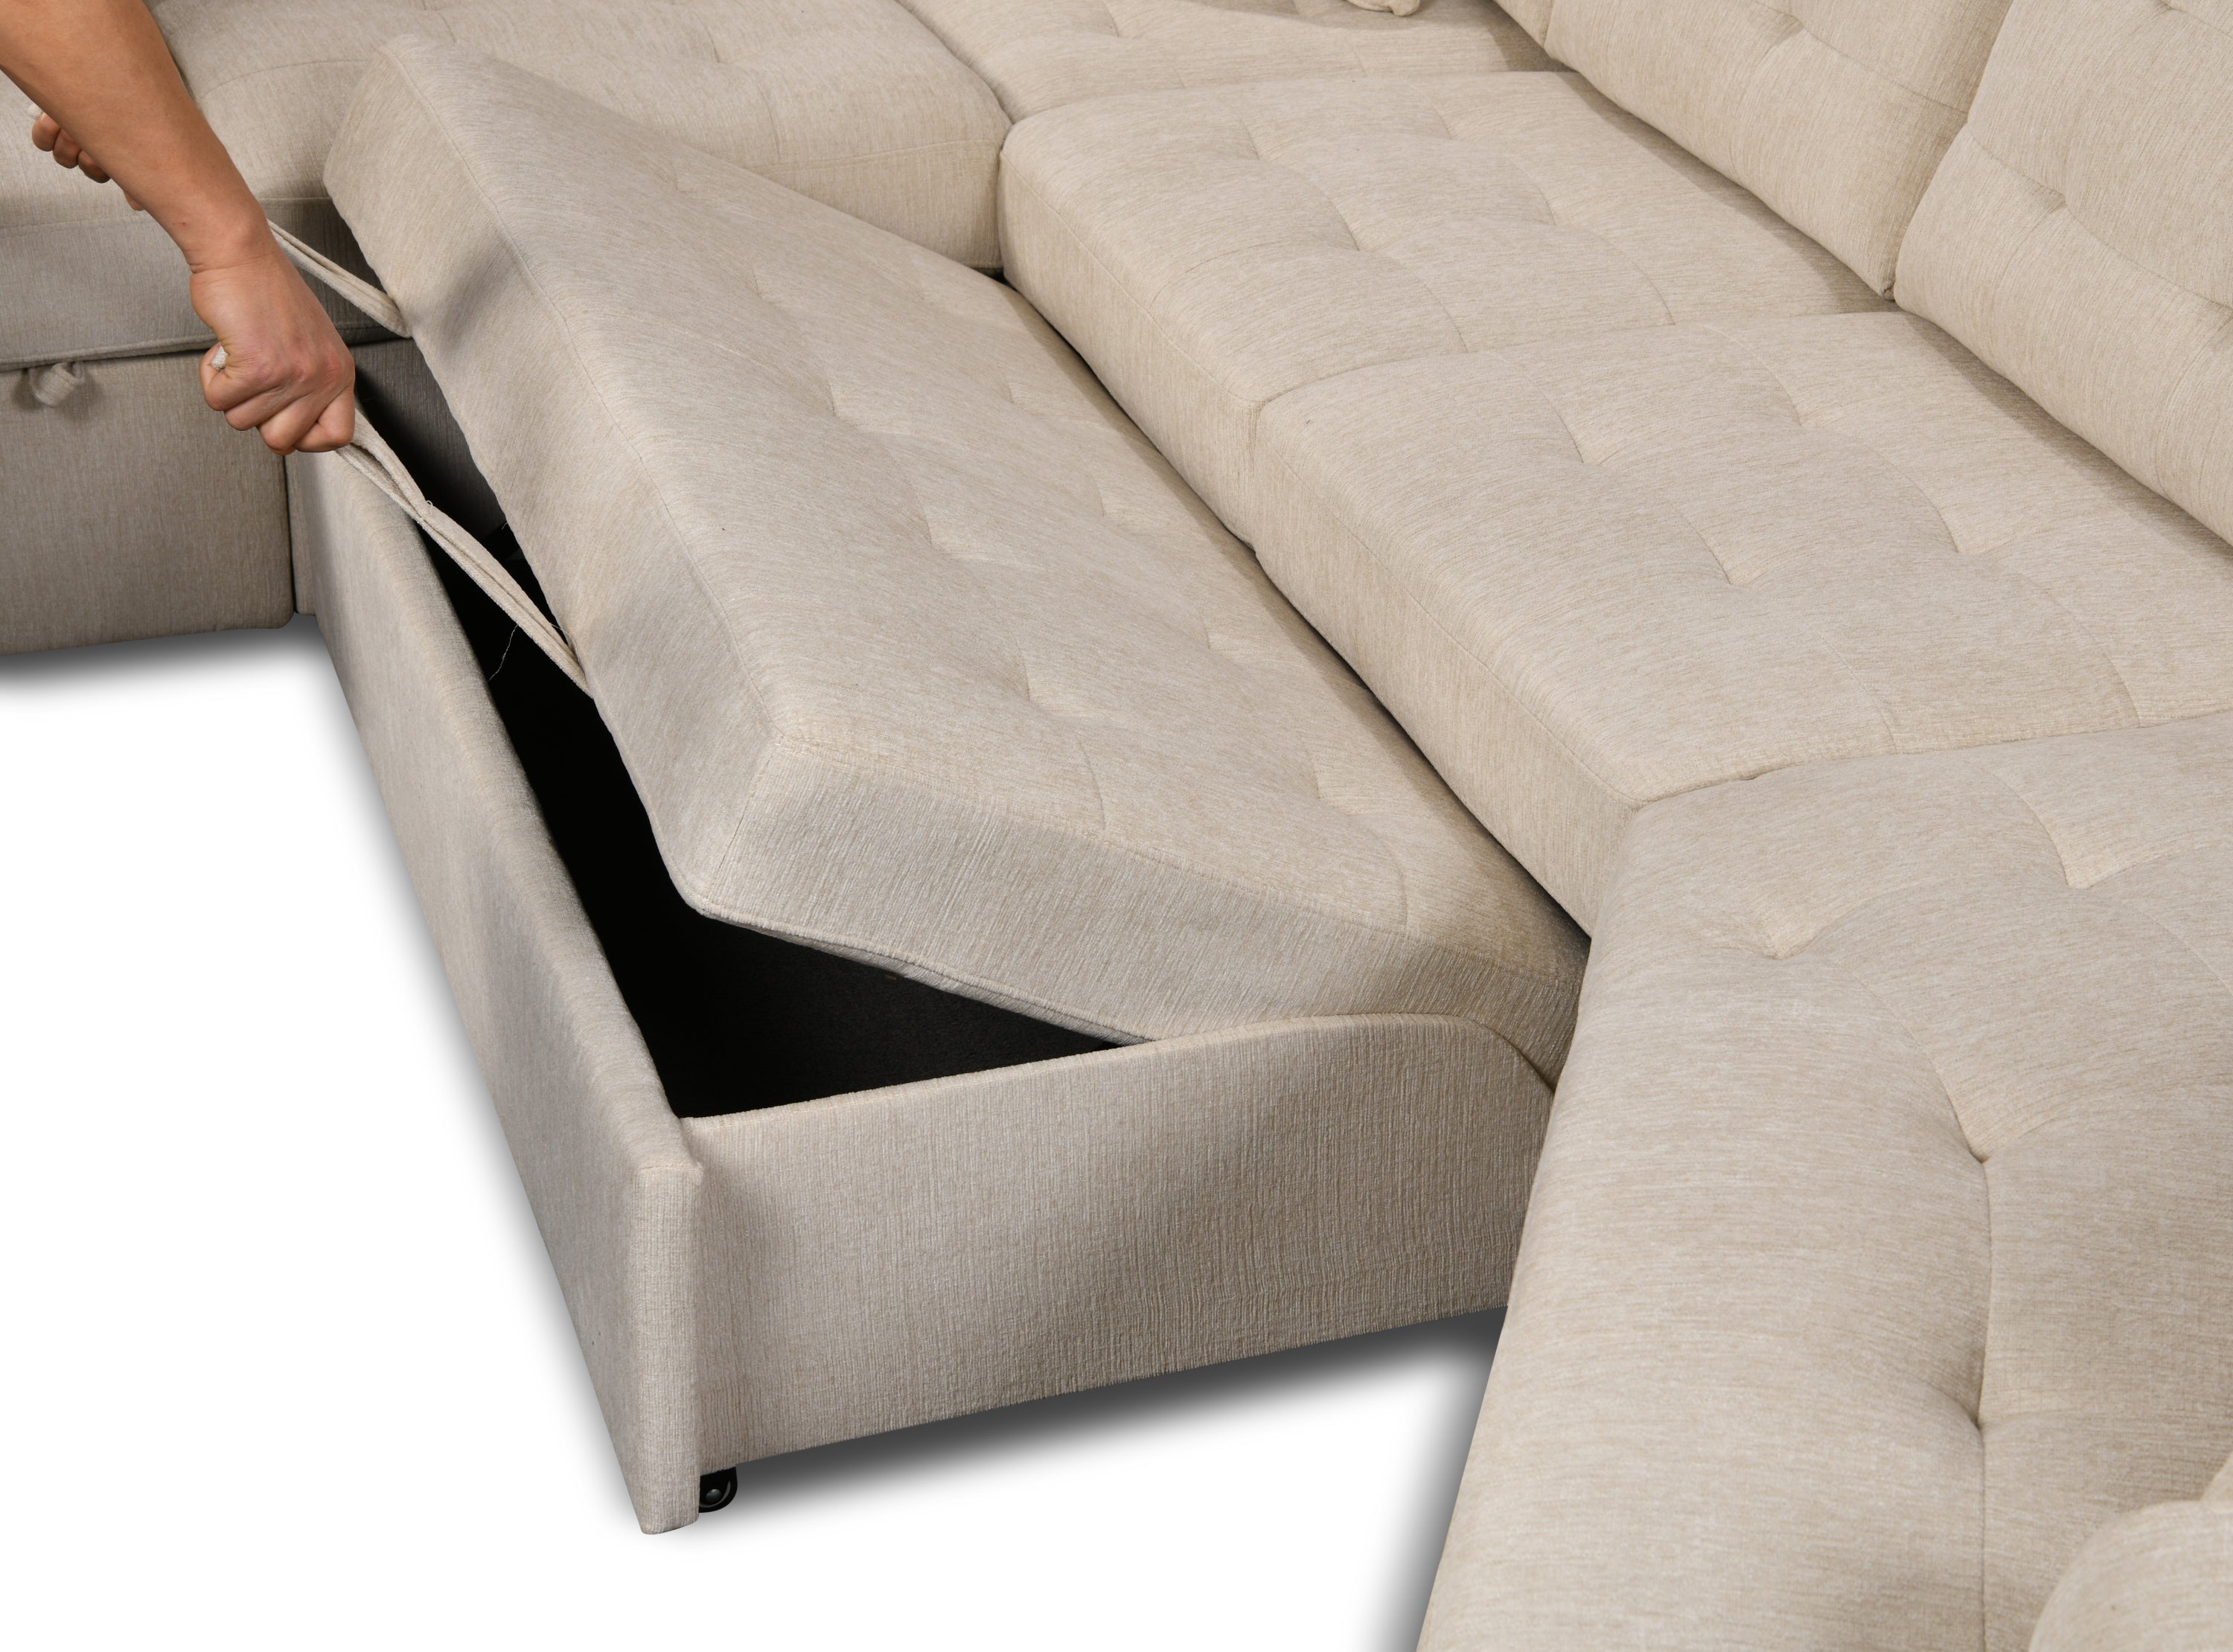 U-Shape Sectional Sofa